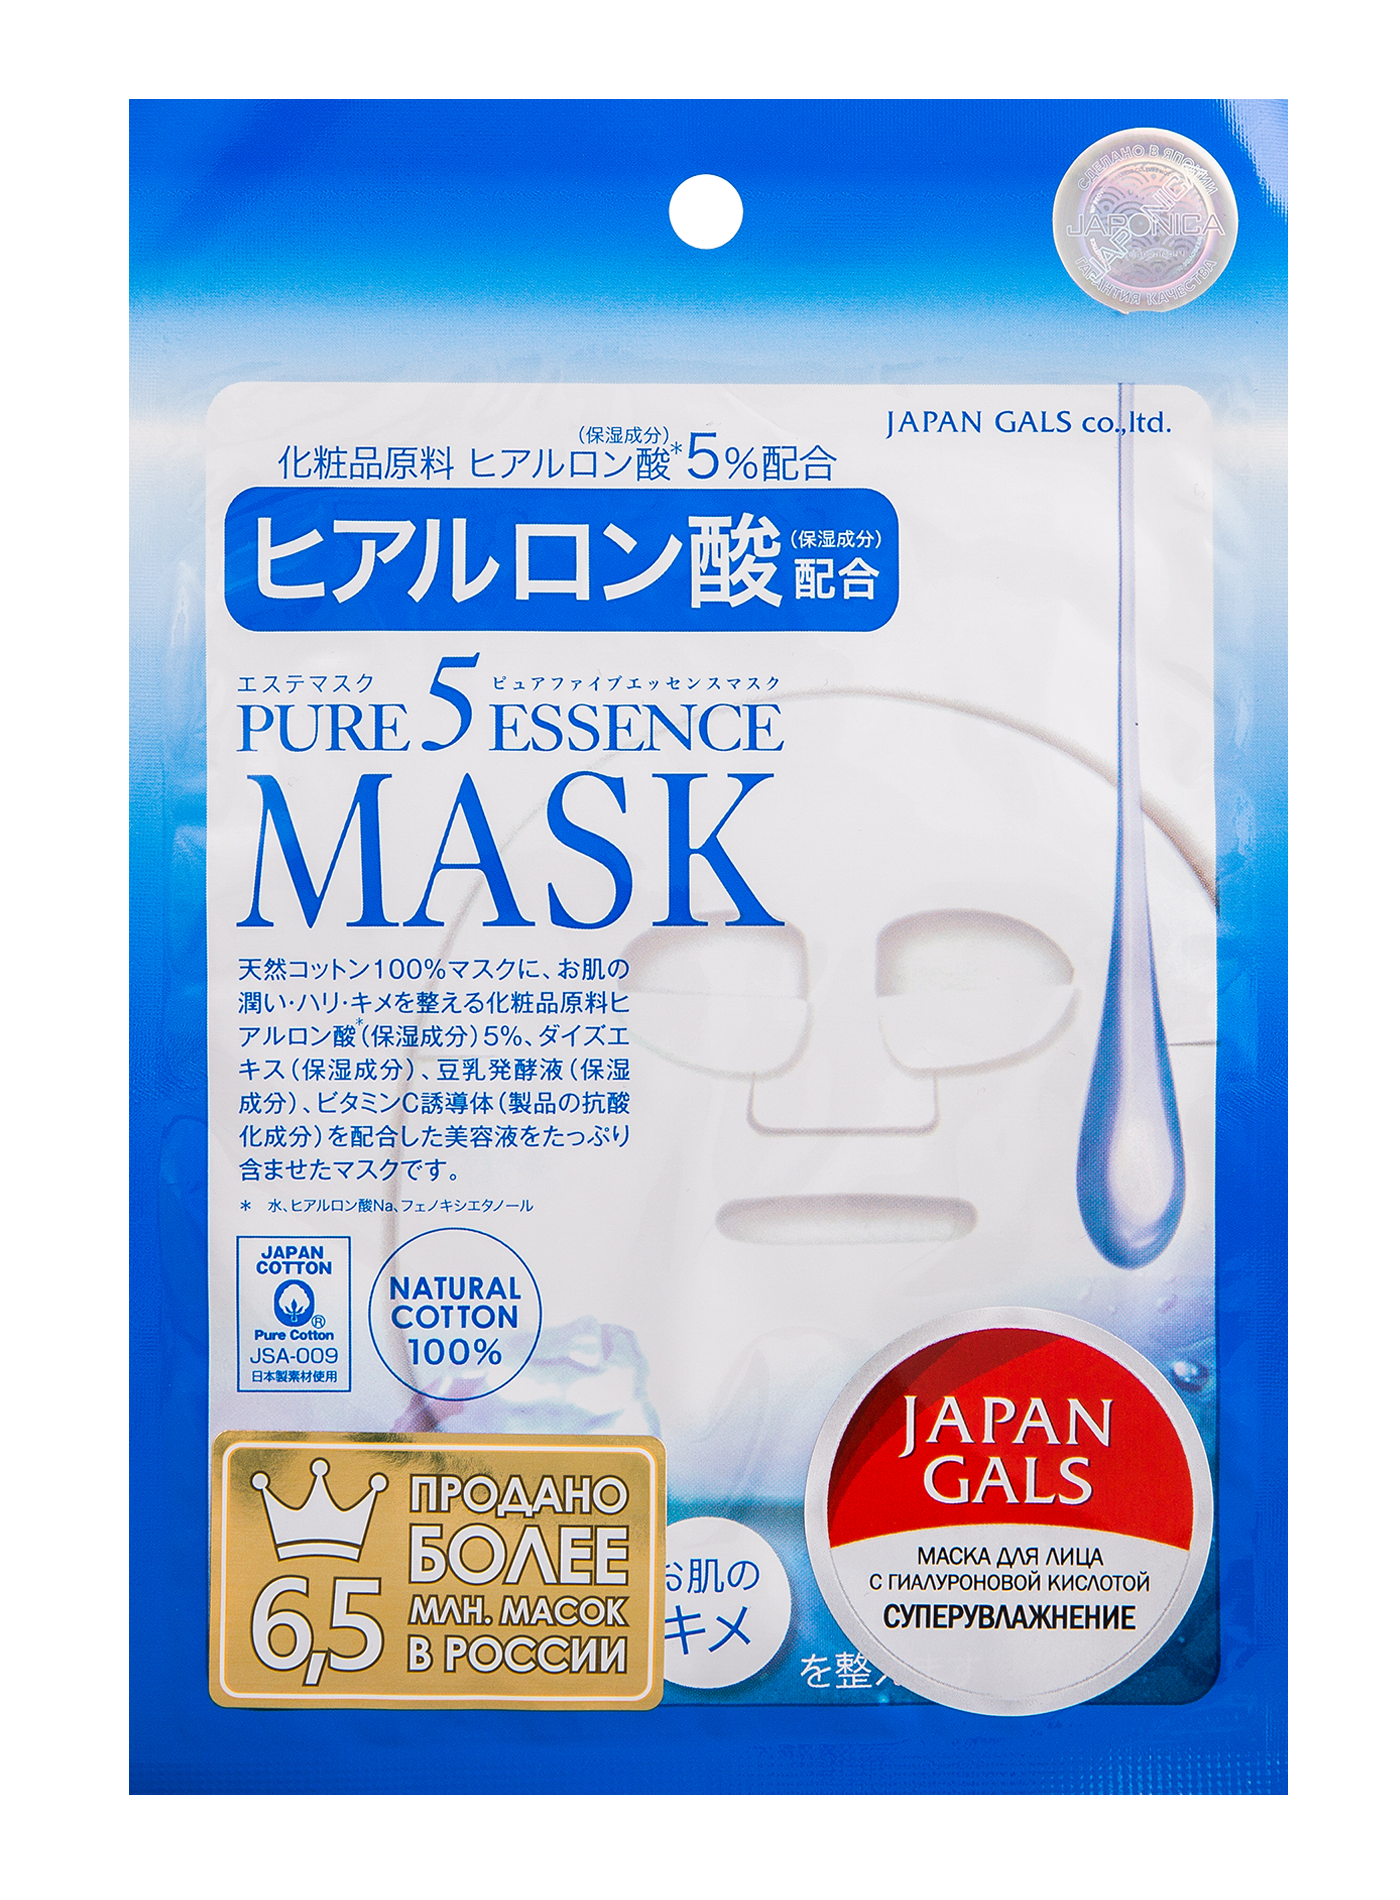 Japan Gals Pure5 Essential маска для глубокого увлажнения с гиалуроновой кислотой, 1шт